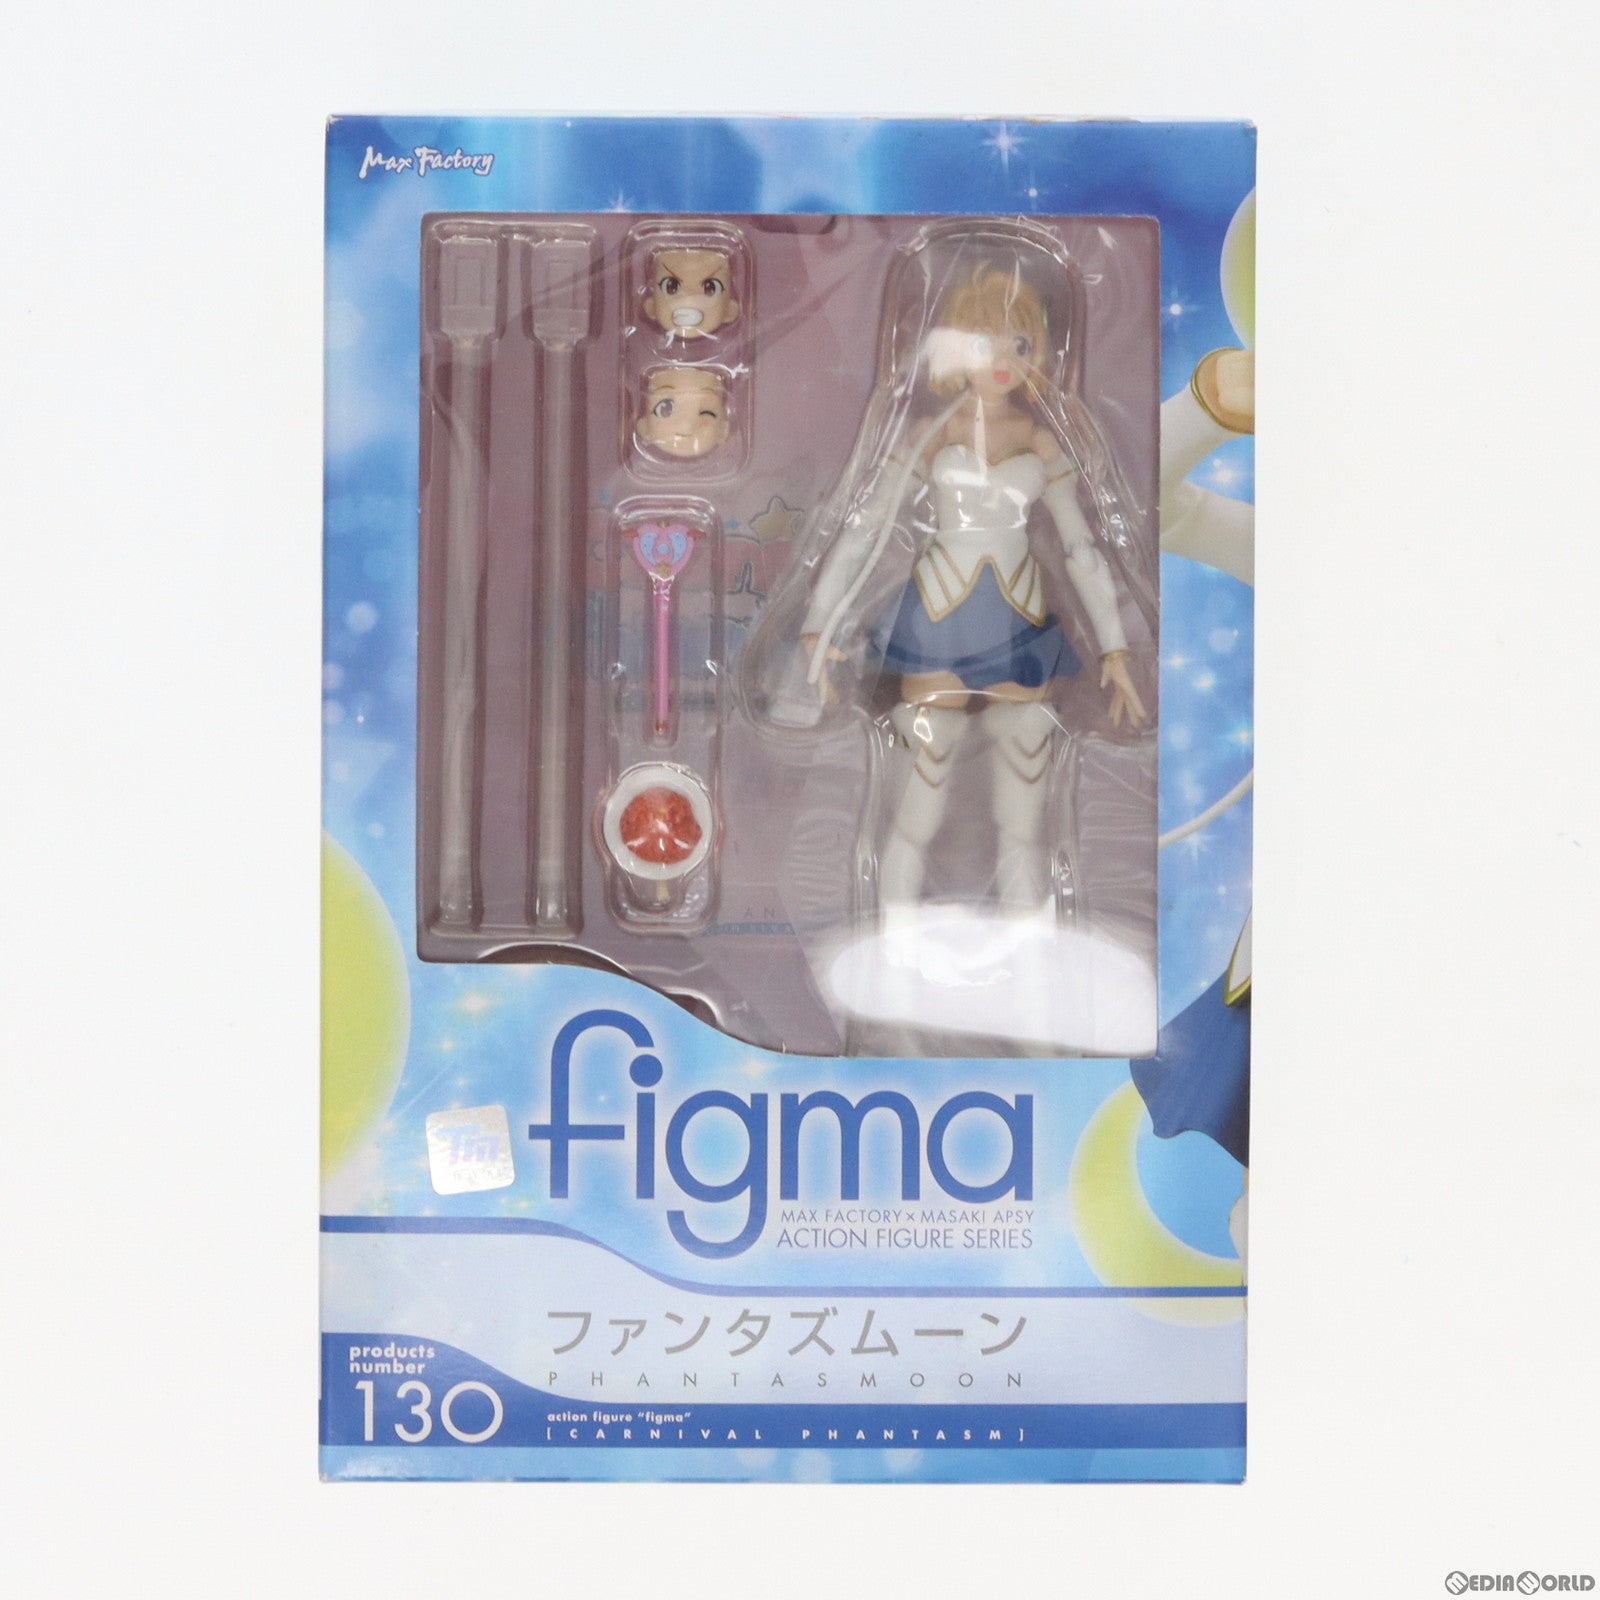 【中古即納】[FIG]figma(フィグマ) 130 ファンタズムーン Carnival Phantasm(カーニバル・ファンタズム) 完成品 可動フィギュア マックスファクトリー(20120520)